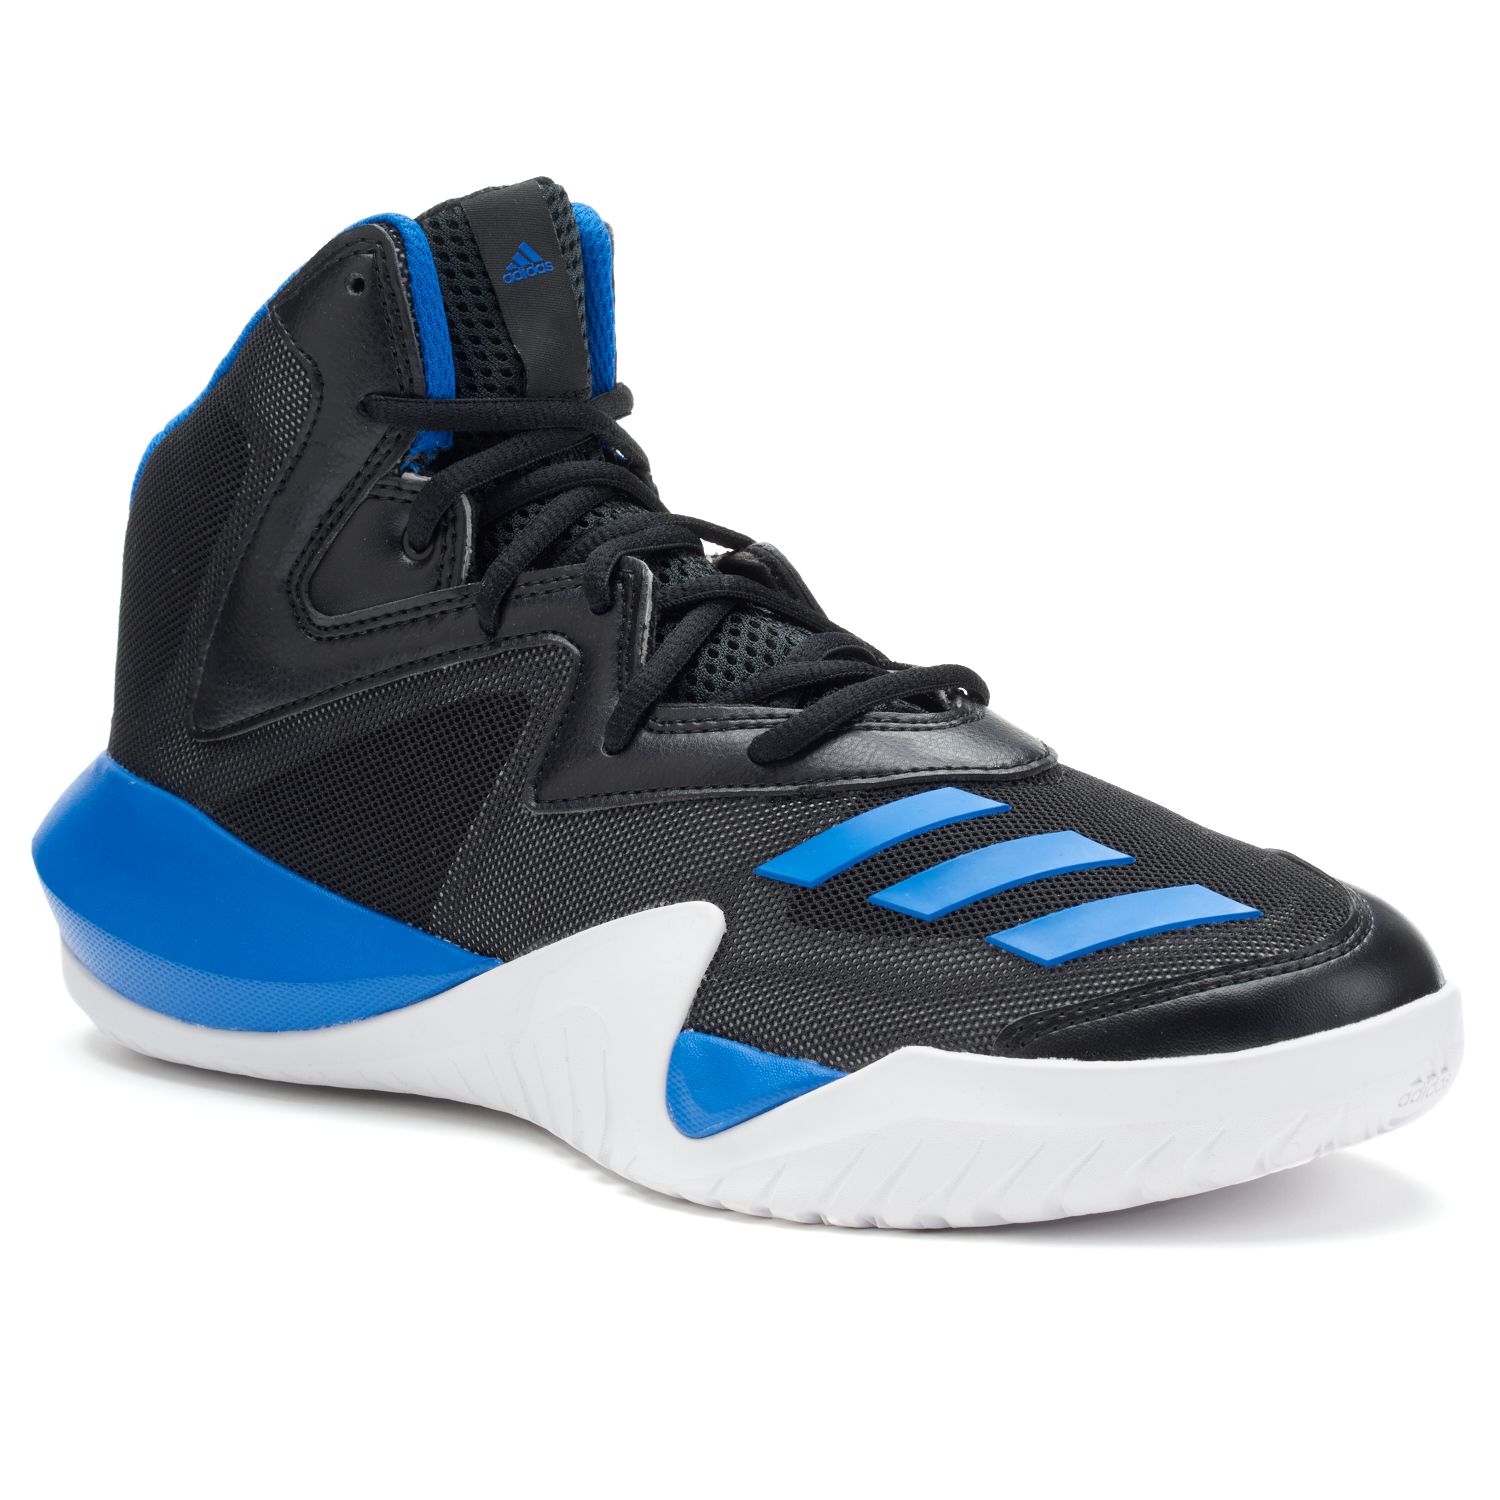 adidas crazy team basketball shoes